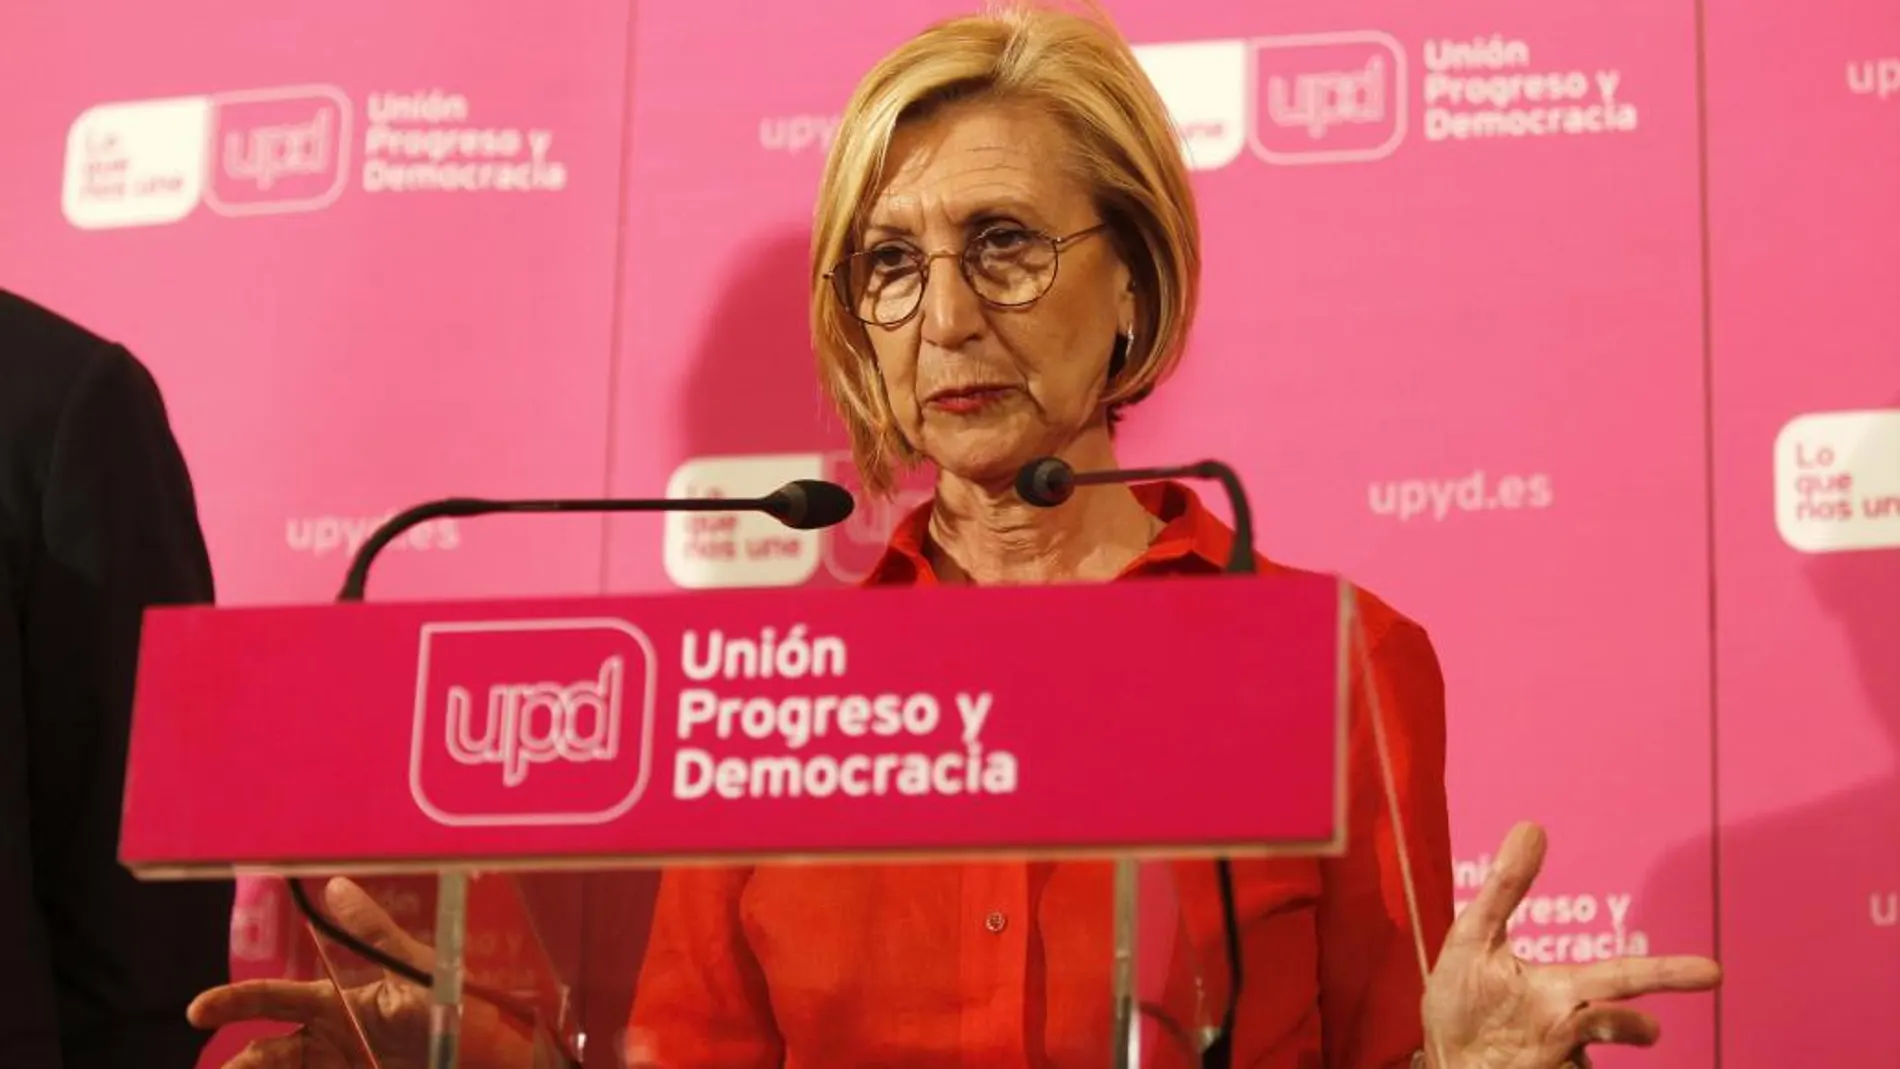 Rosa Díez, portavoz de UPyD, tras comparecer para comentar los resultados electorales y anunciar que no presentará su candidatrura para el Consejo de Dirección del partido.